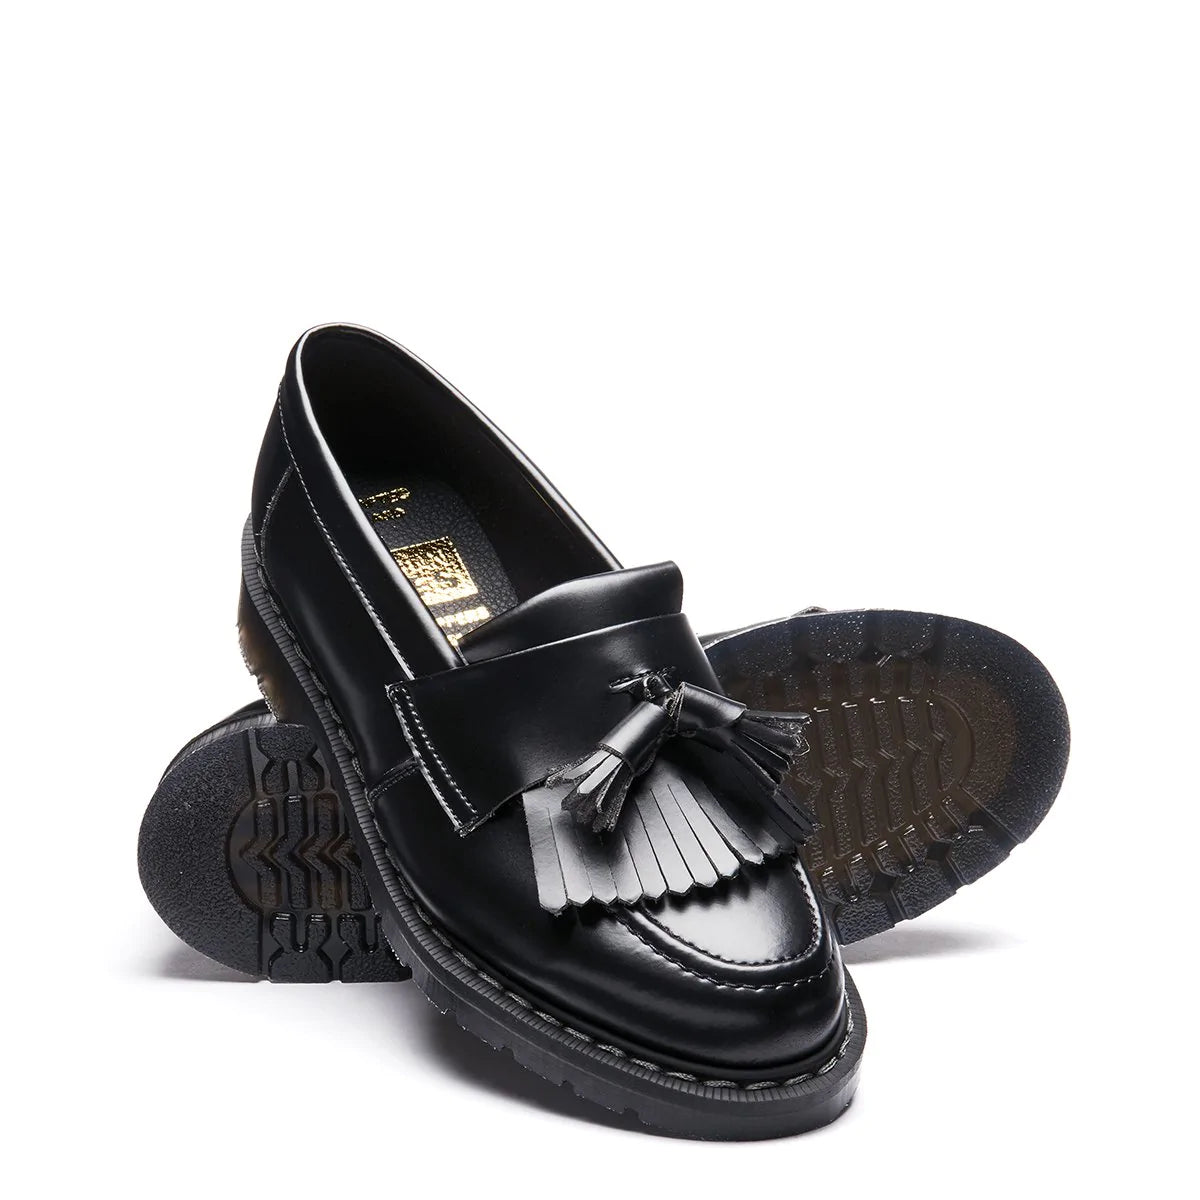 Solovair Tassel Loafer in Black Hi-Shine | Getoutsideshoes.com ...